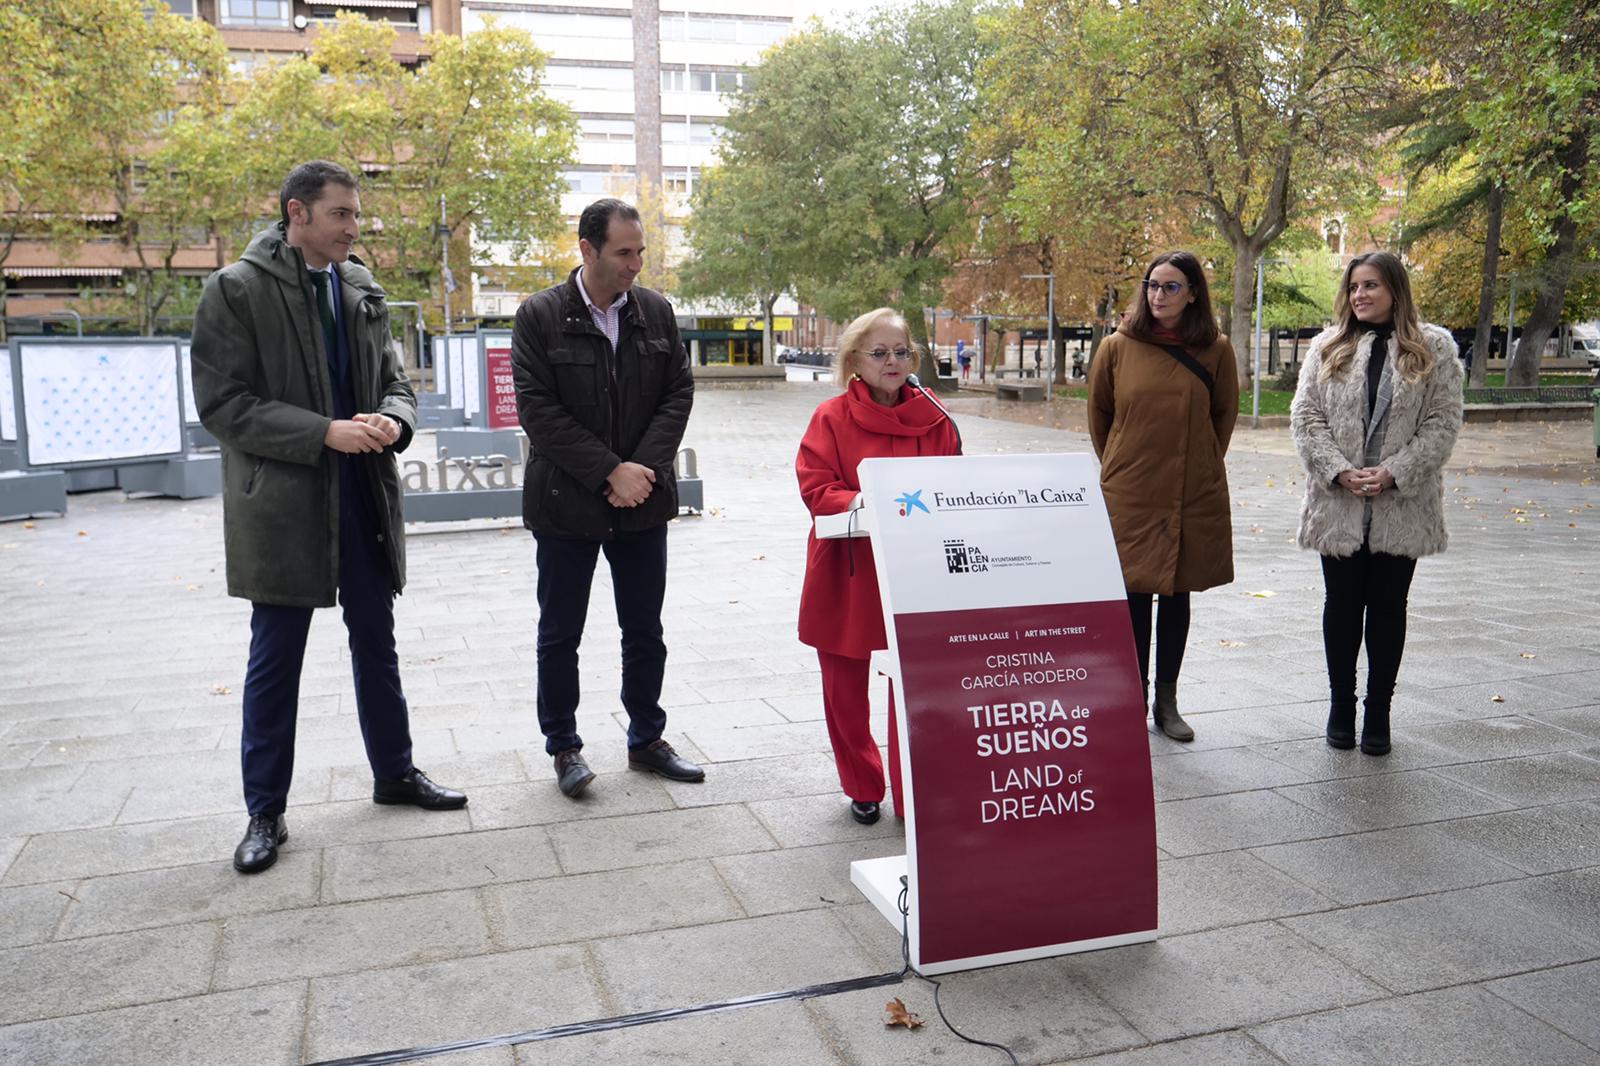 Imagen La Fundación ”la Caixa” y el Ayuntamiento de Palencia presentan Tierra de sueños de Cristina García Rodero